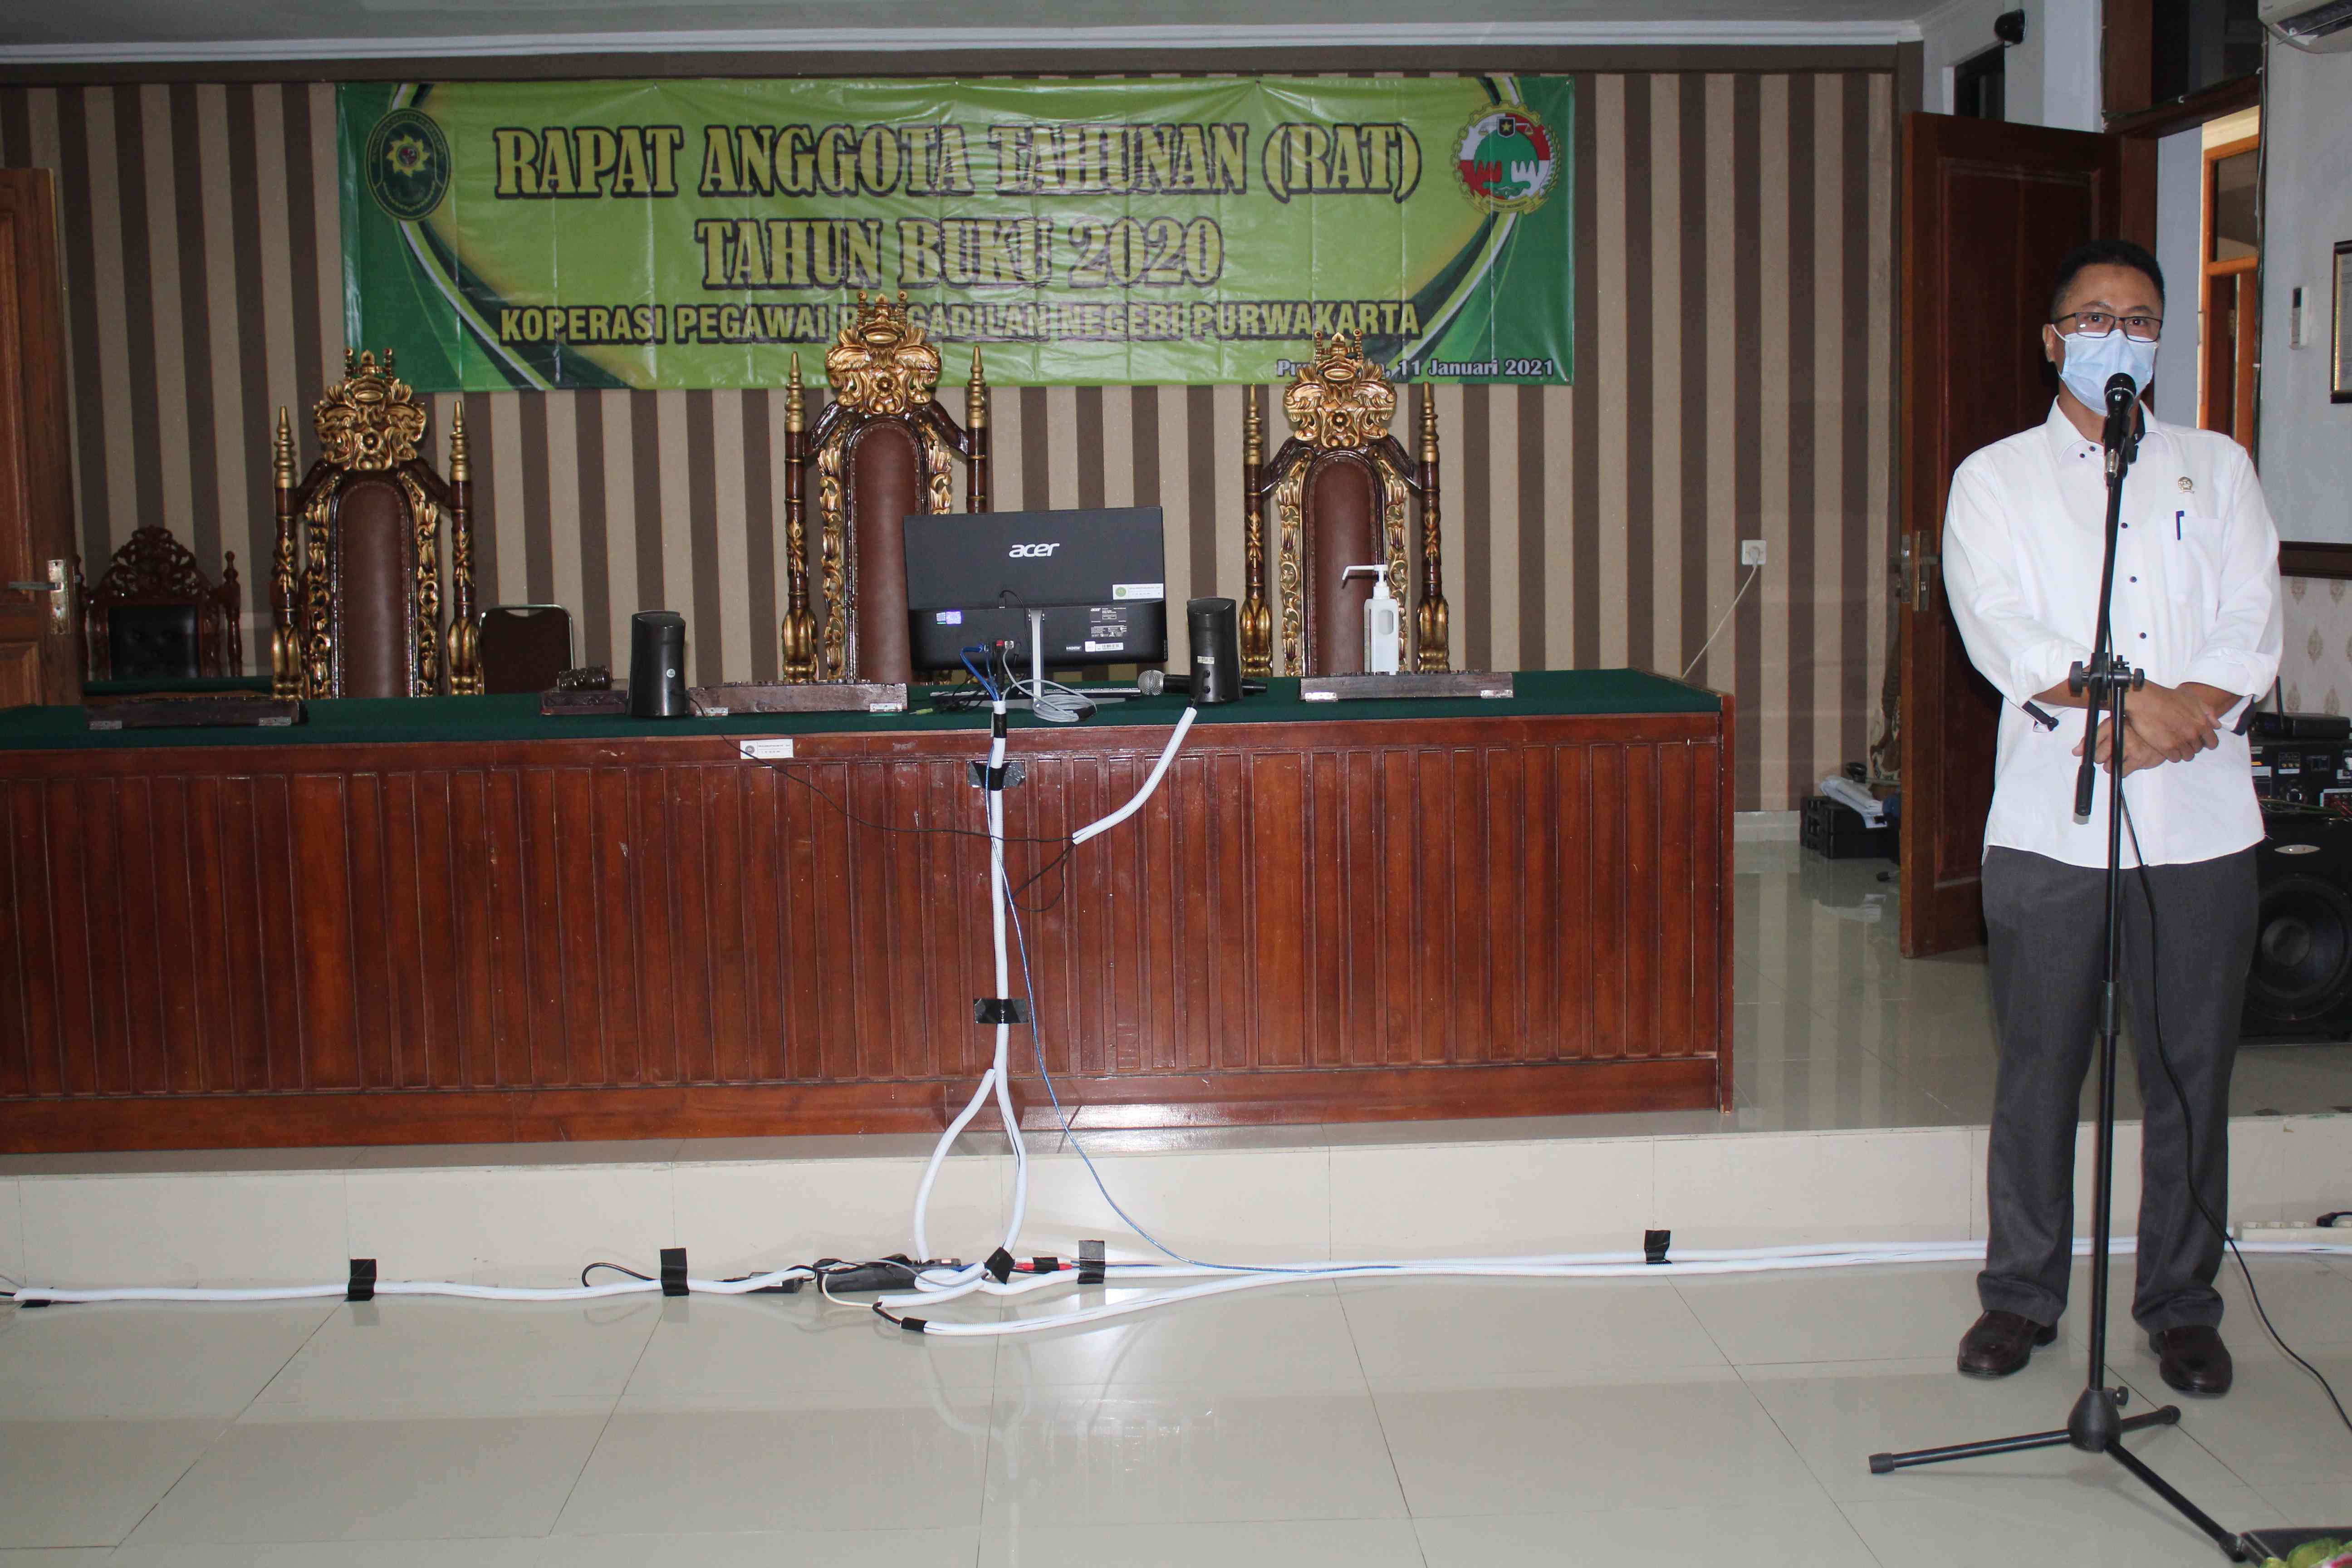 Sambutan Penasihat Koperasi Pengayoman Pegawai Pengadilan Negeri Purwakarta dalam acara RAT Koperasi Tahun Buku 2020 (11/1/2021)